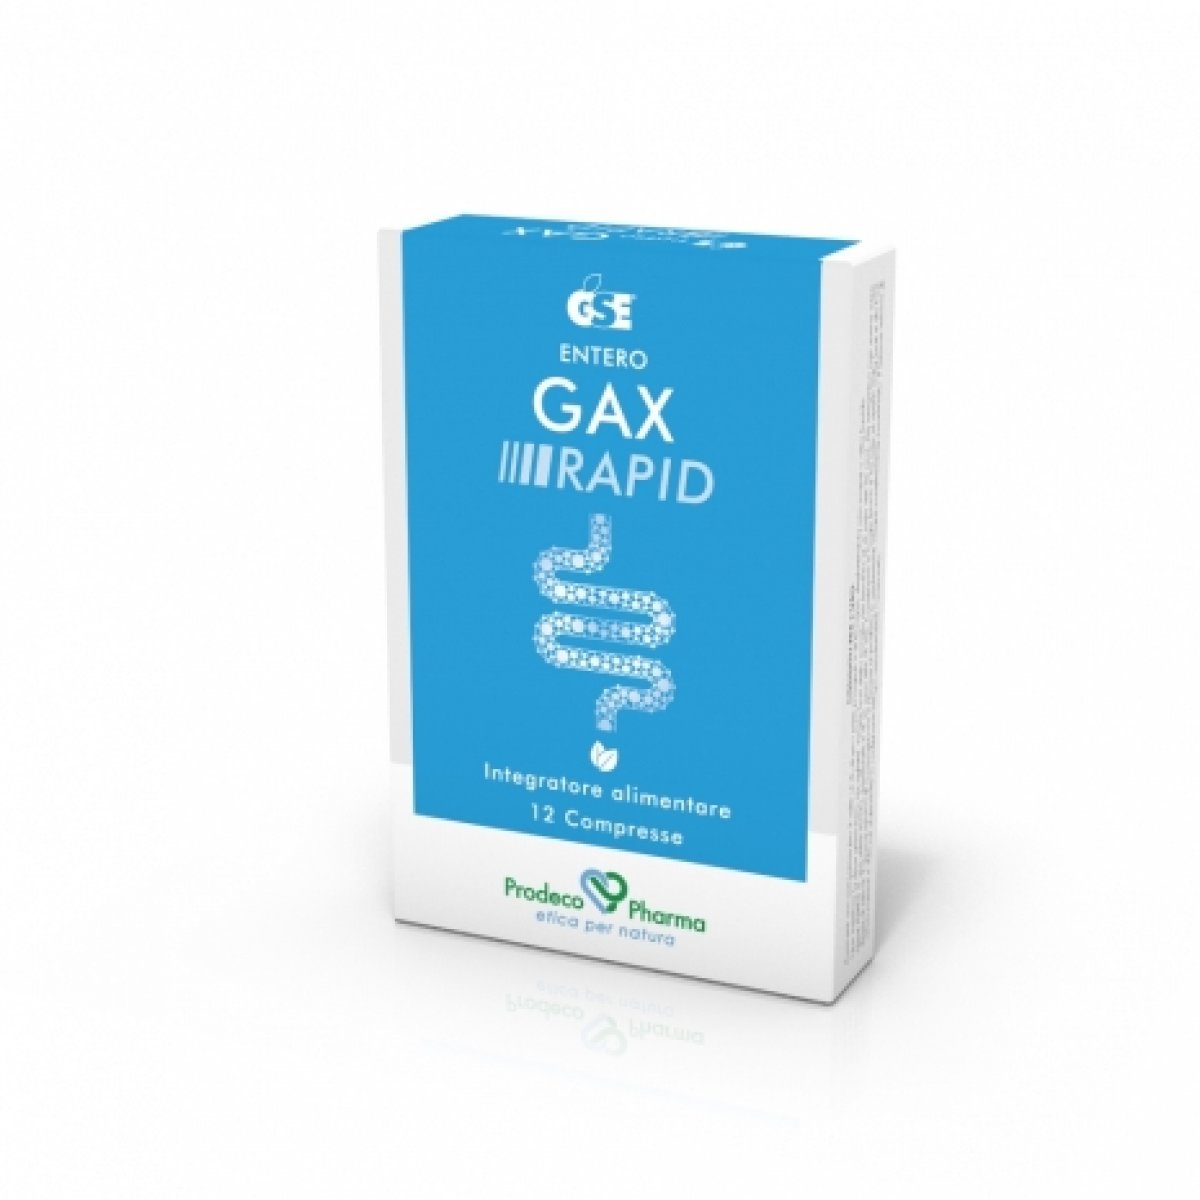 GSE ENTERO GAX Rapid - Prodeco Pharma A base di componenti naturali e oli essenziali ripristina il benessere gastro-intestinale in caso di tensione, gonfiore, meteorismo. Confezione da 12 compresse in blister.